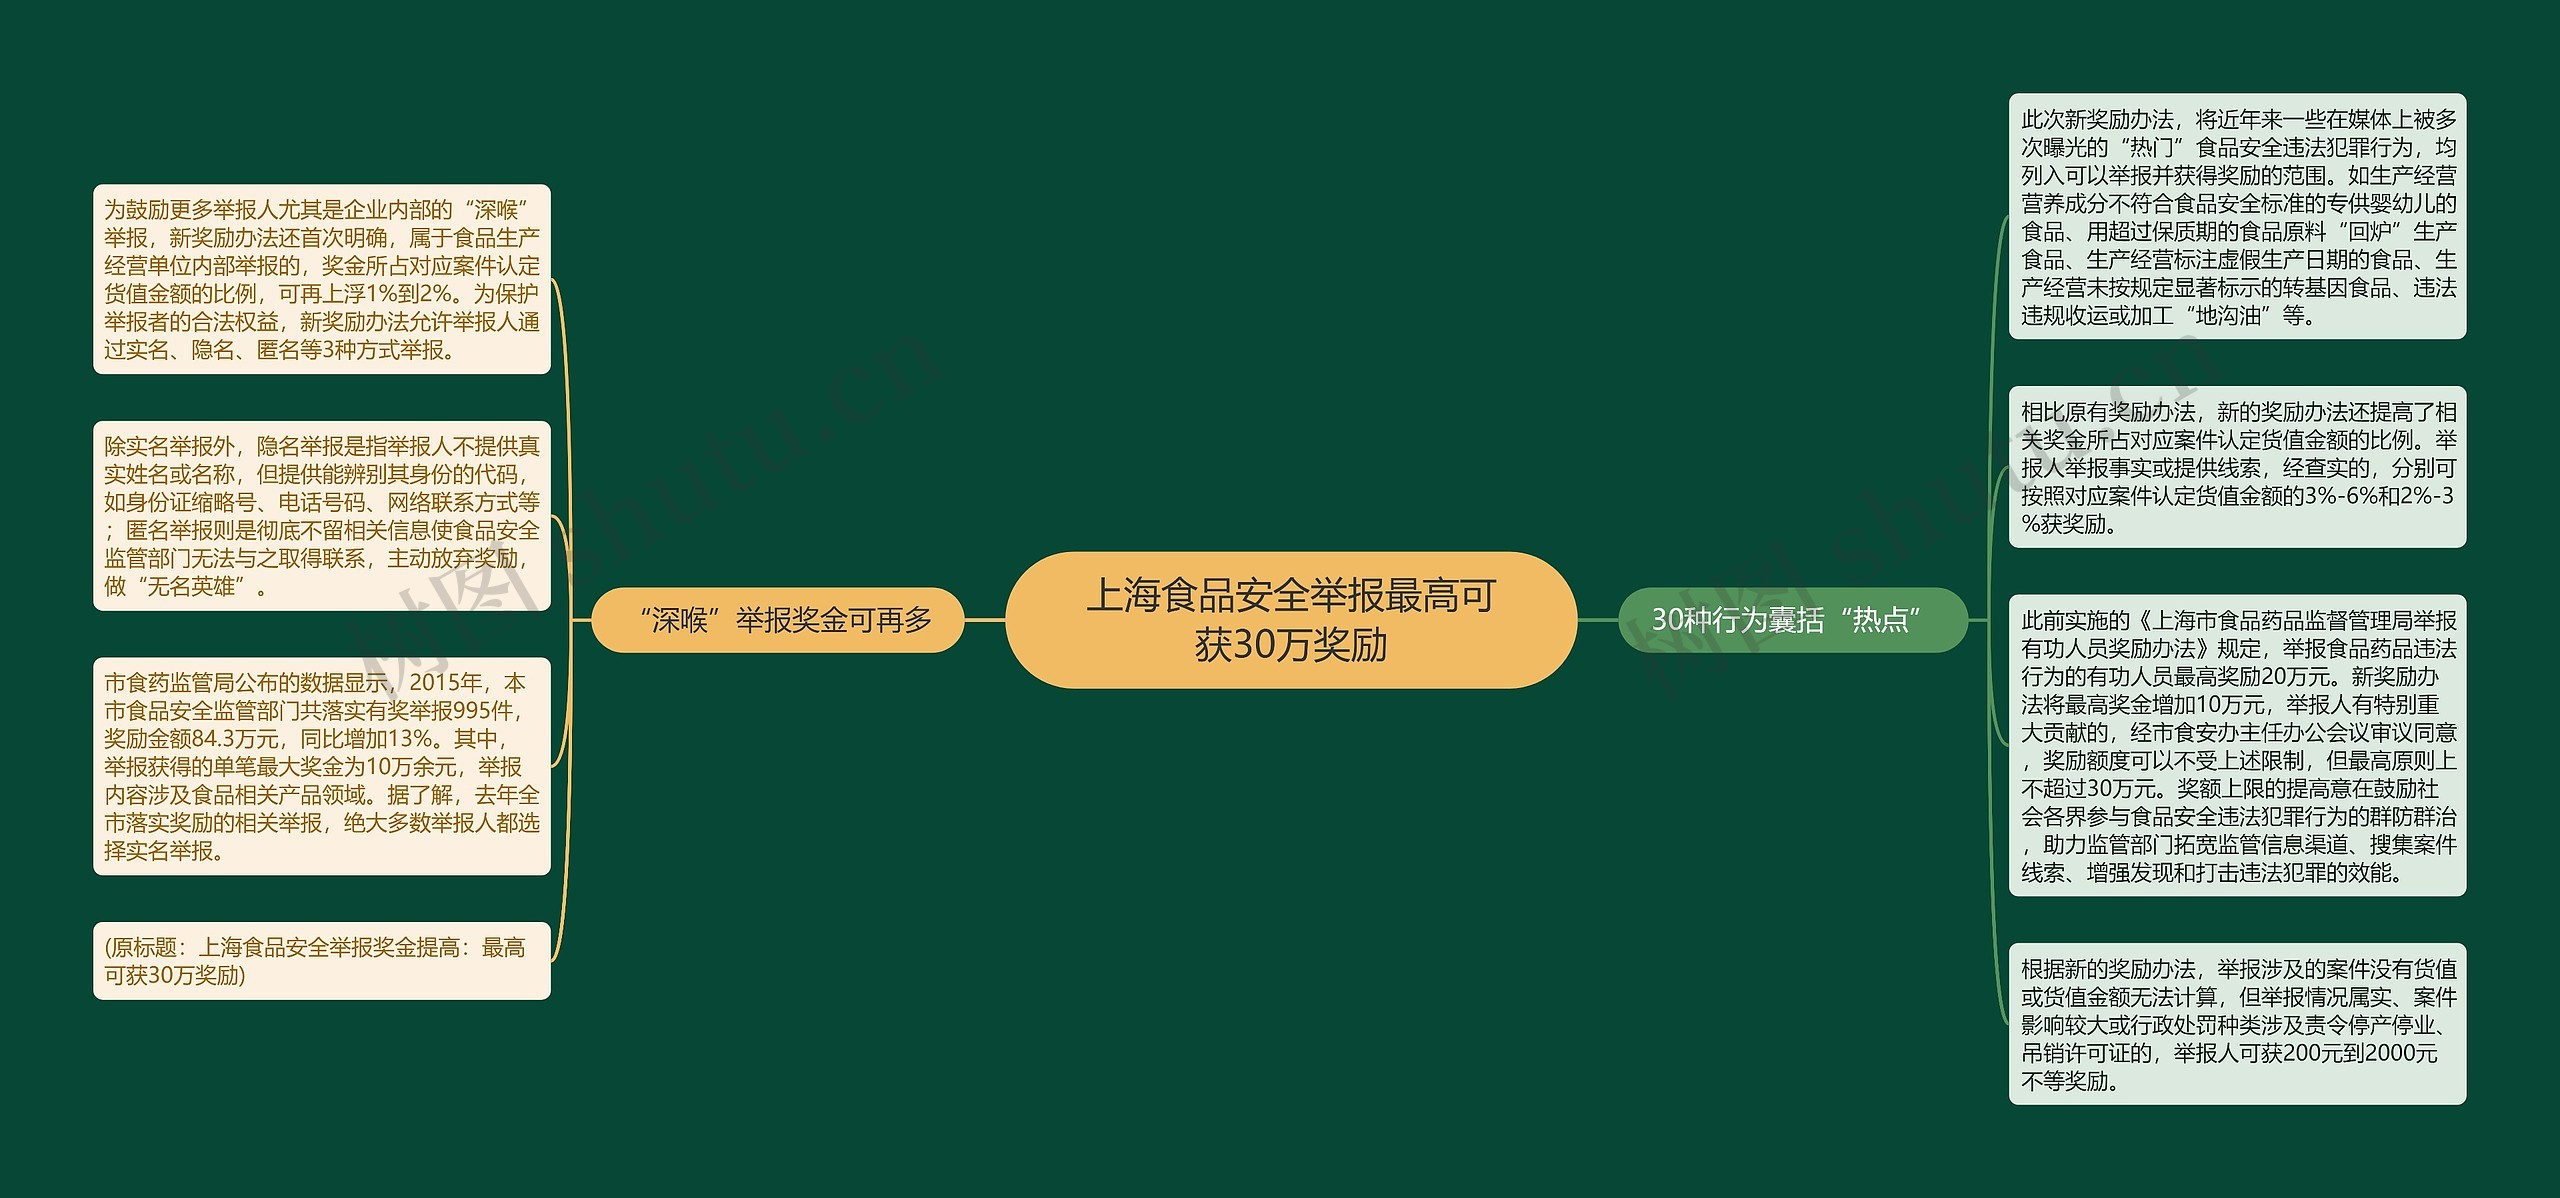 上海食品安全举报最高可获30万奖励思维导图